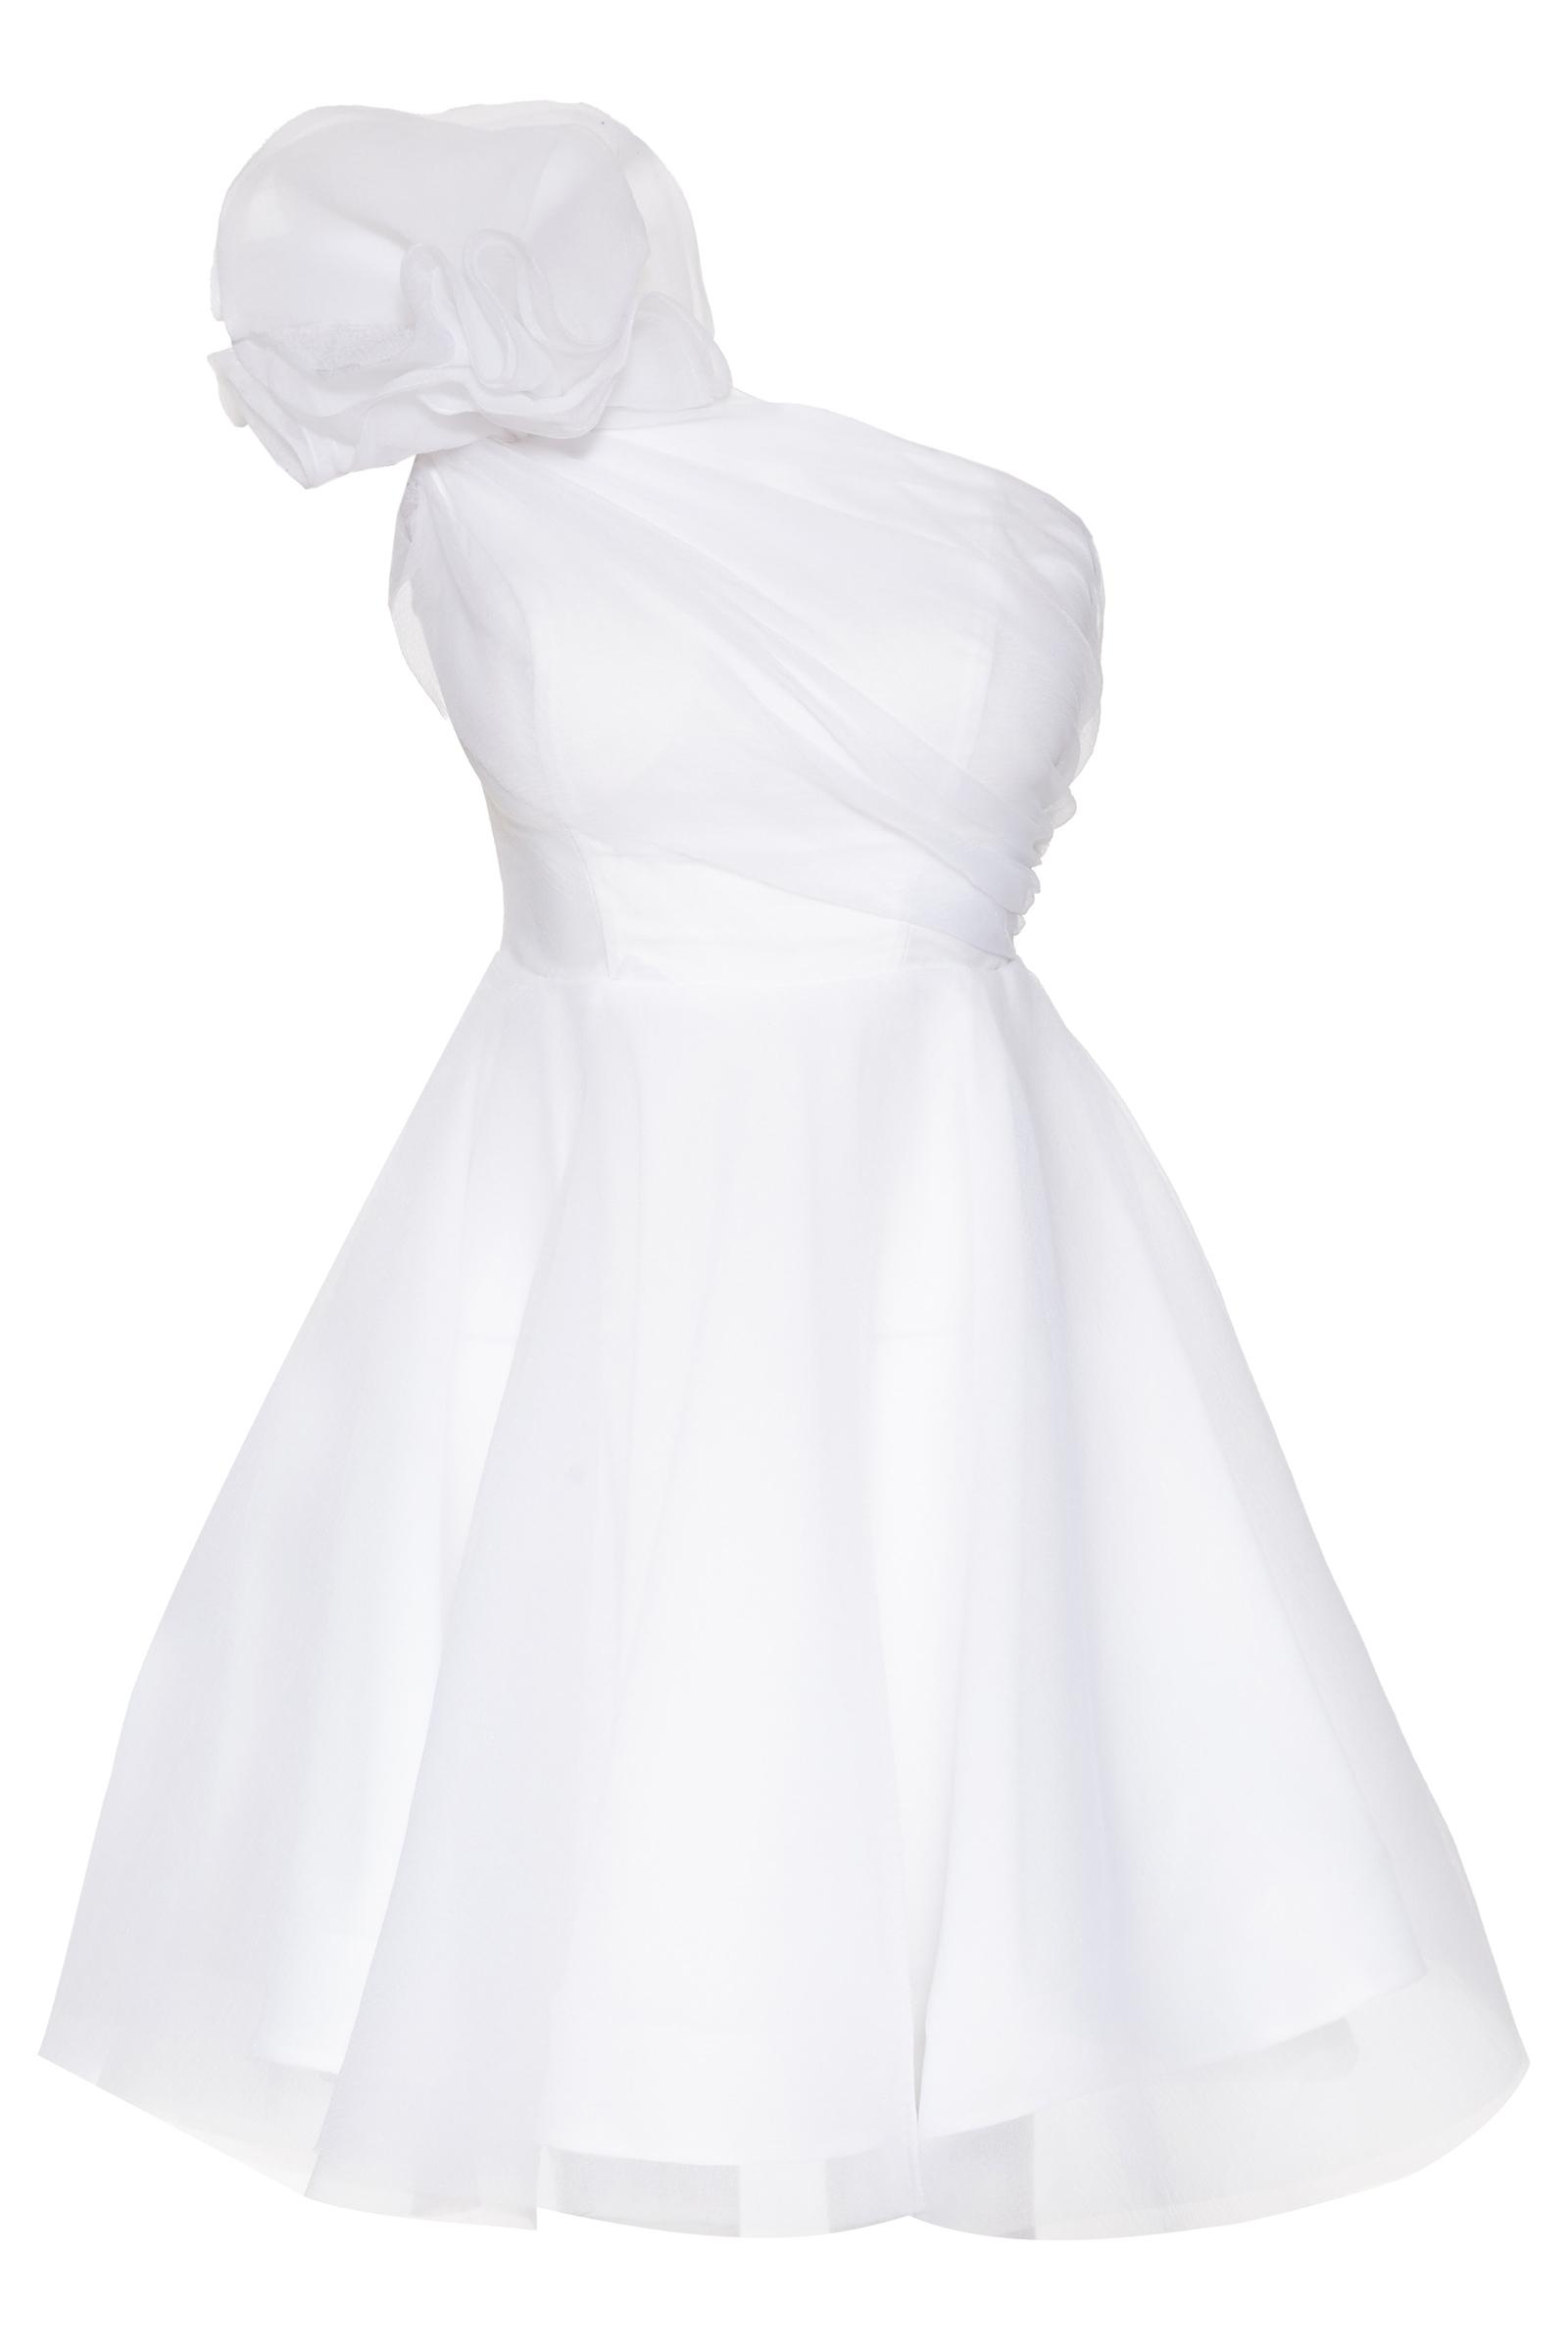 White tulle one arm mini dress